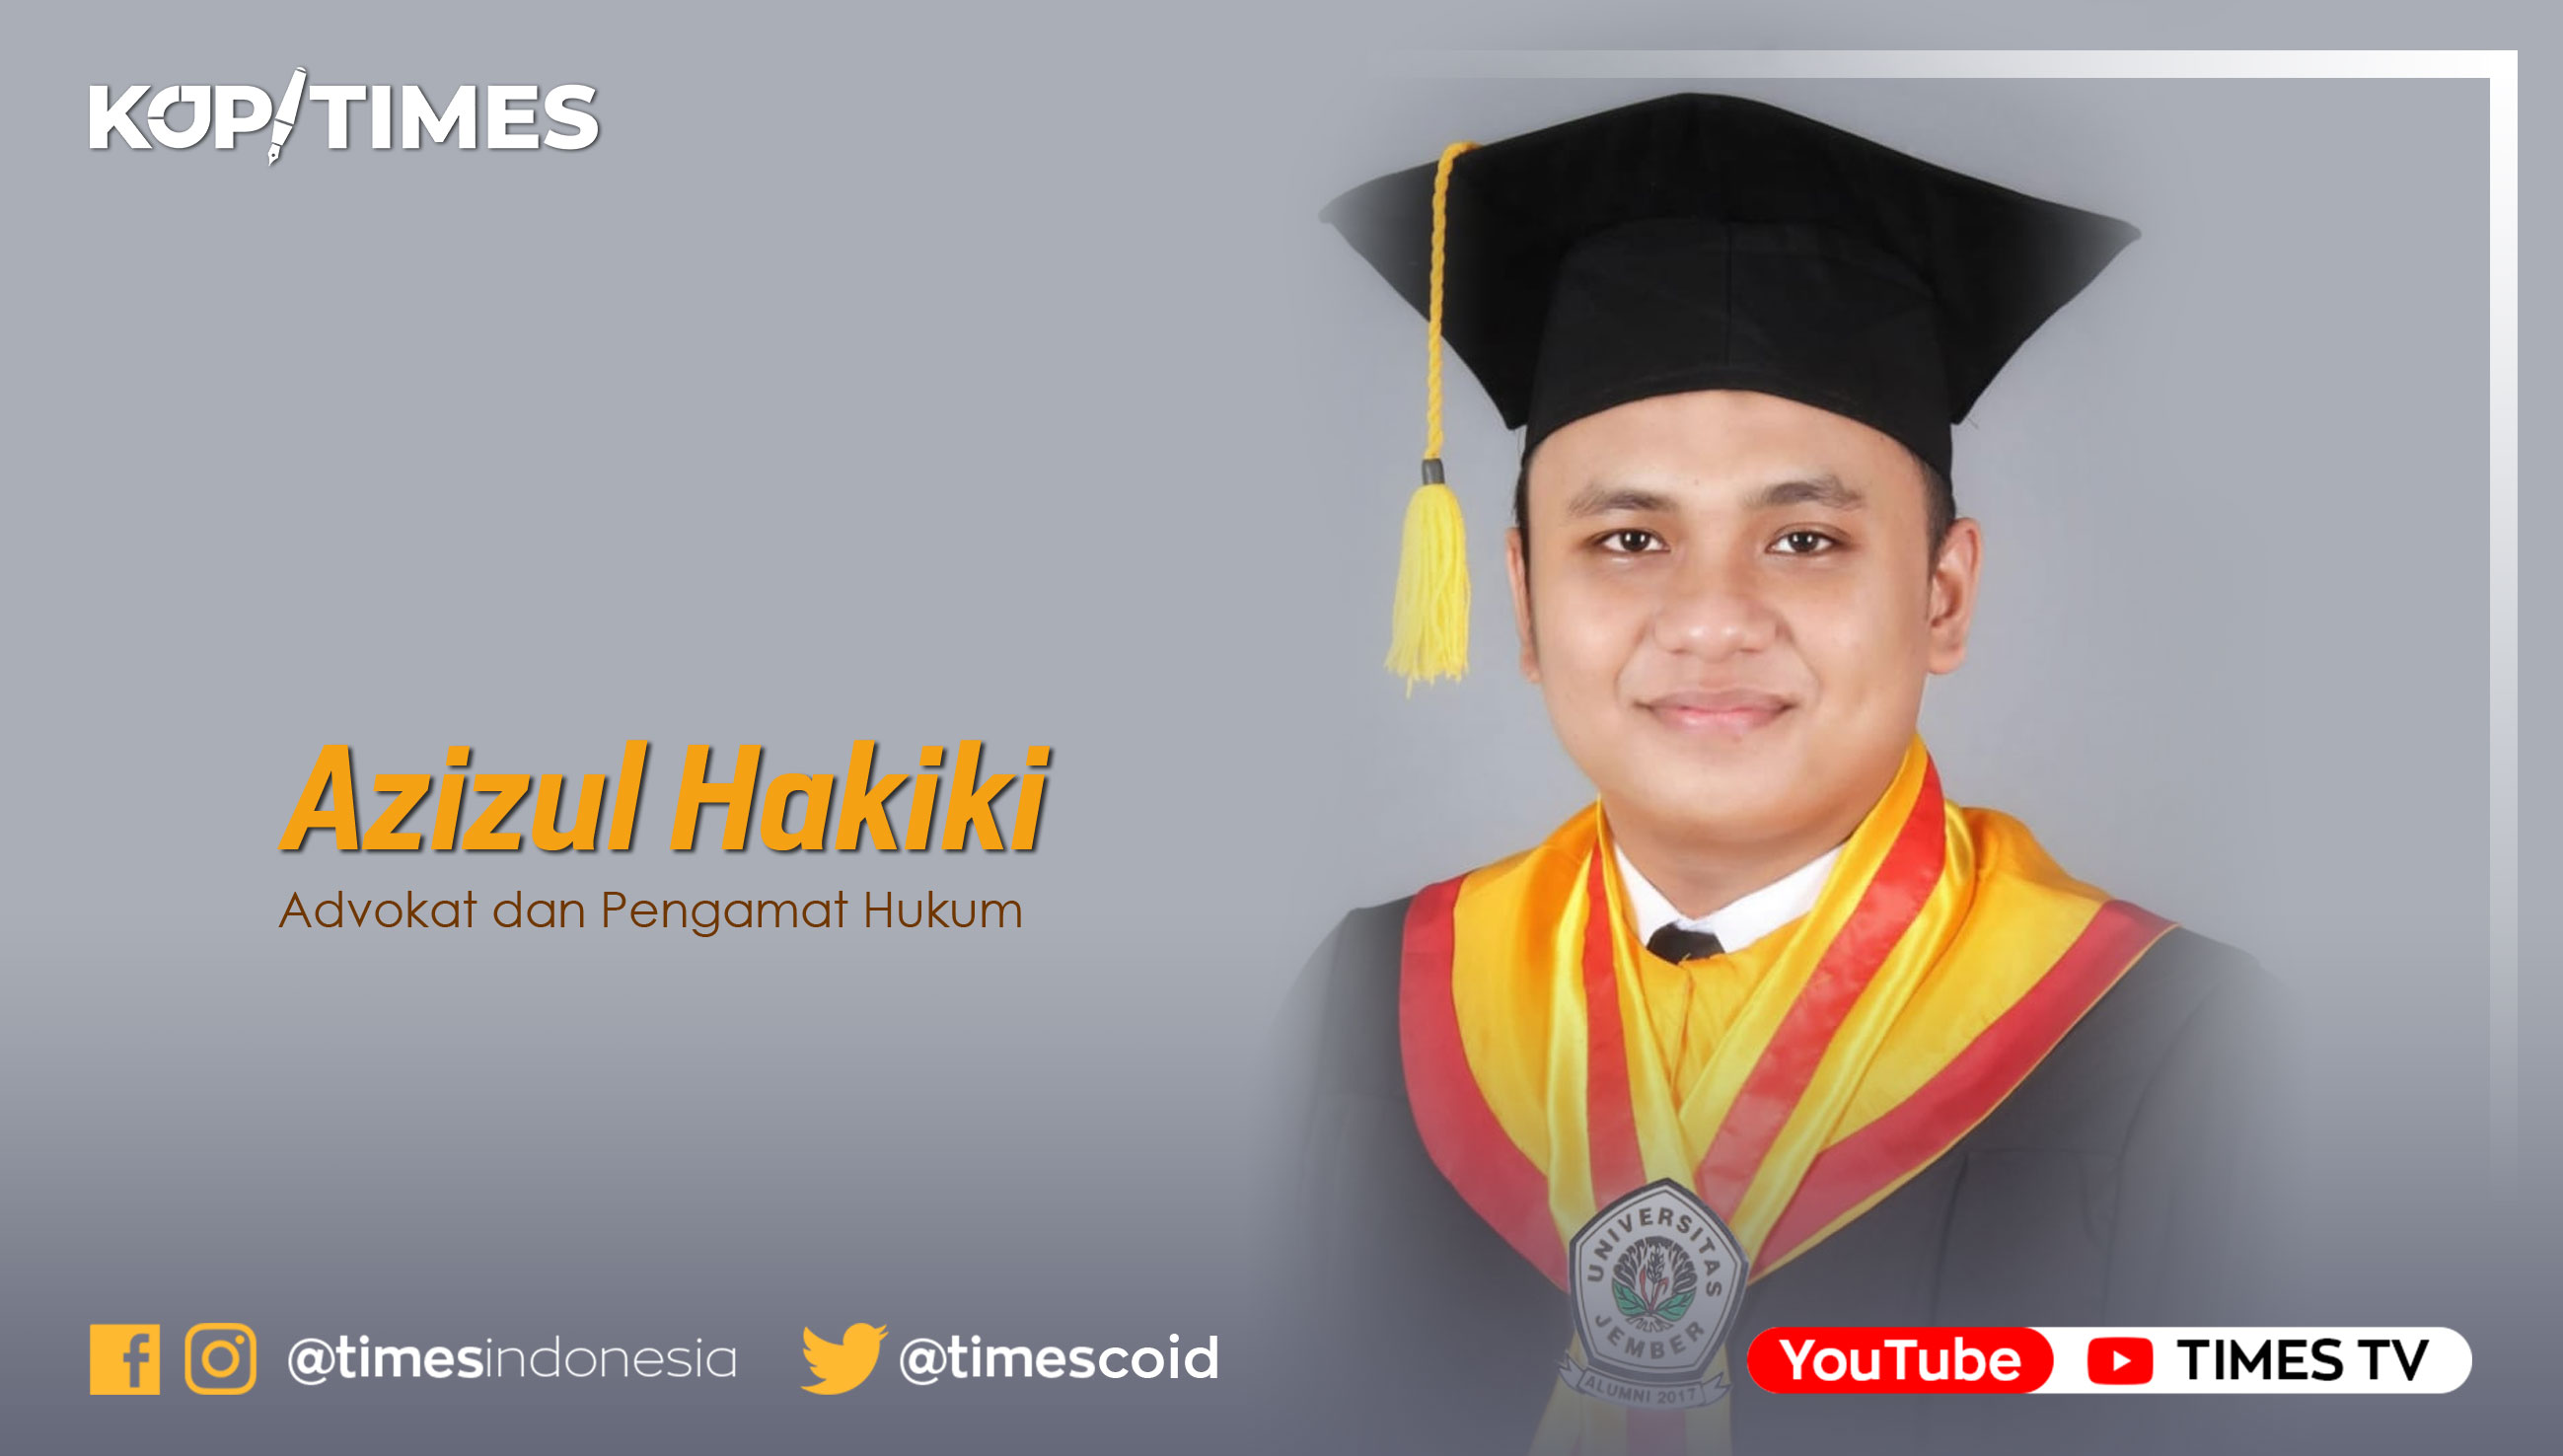 Azizul Hakiki, Advokat dan Pengamat Hukum, Alumni Magister Ilmu Hukum Universitas Airlangga.